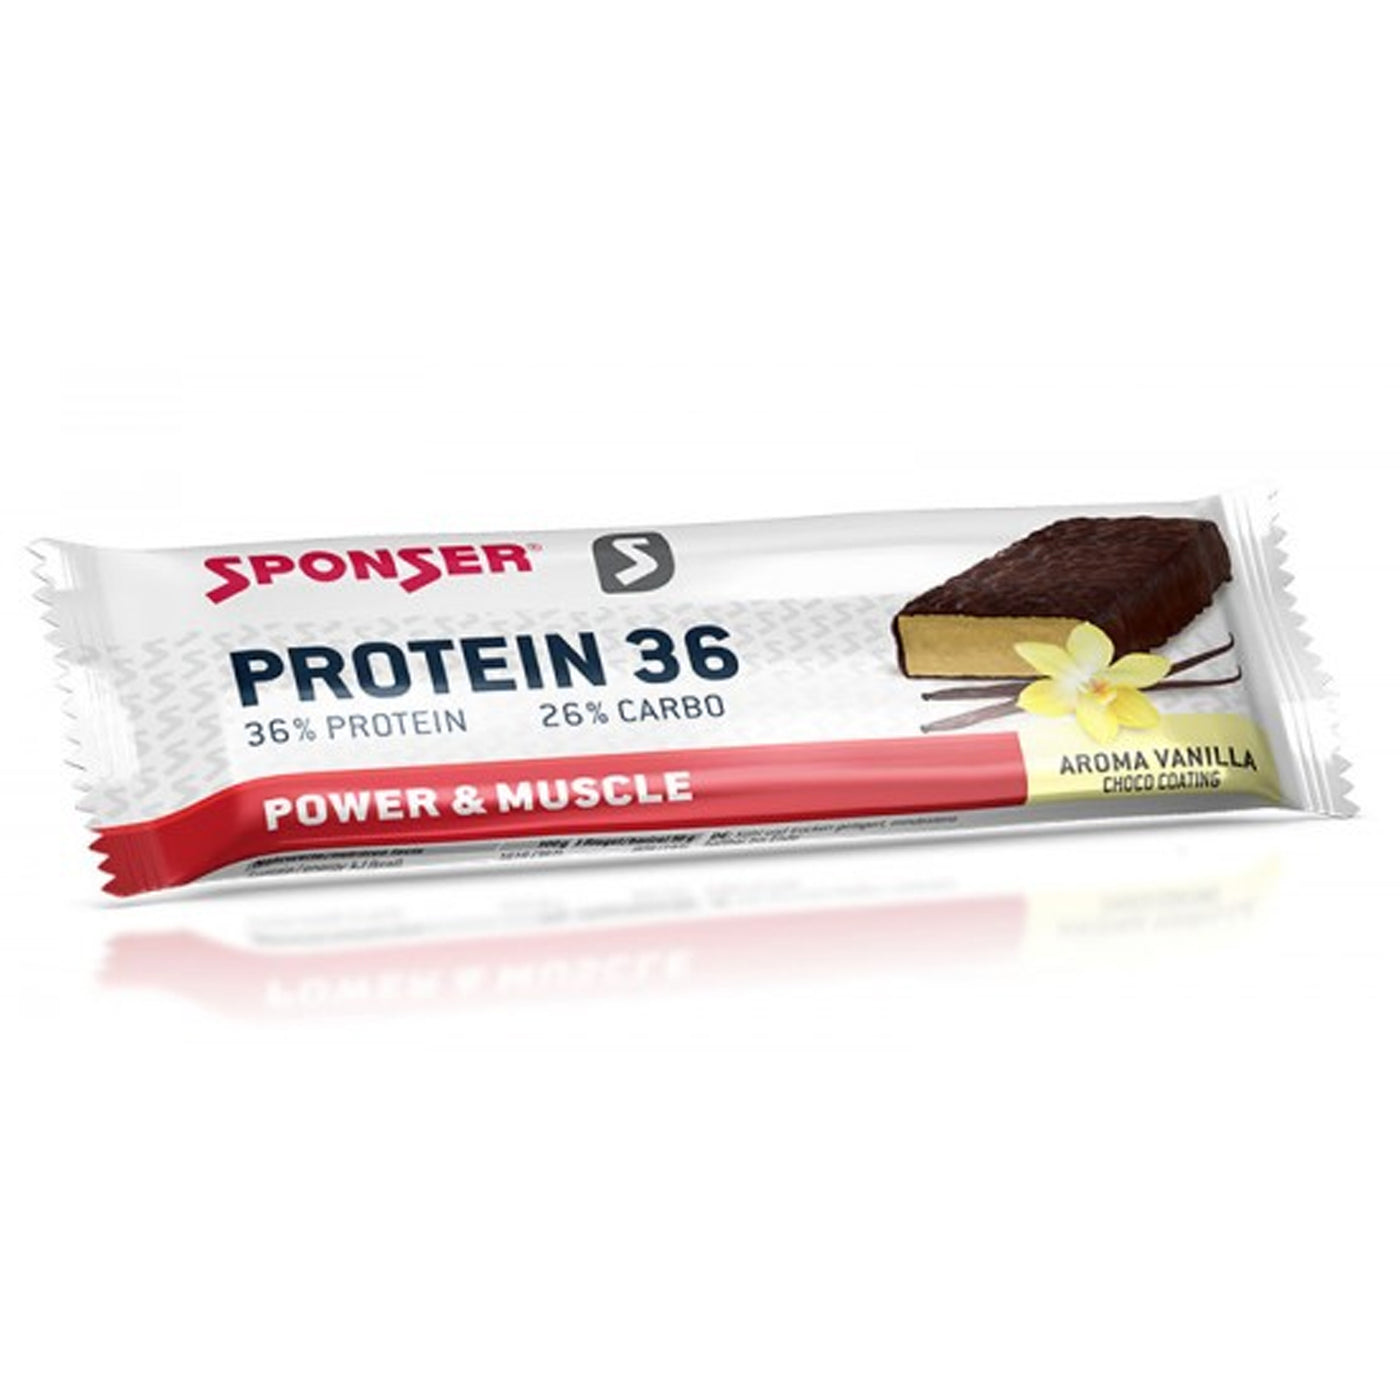 Sponser - Protein 36 Bar - Garage/Velos-Motos Allemann